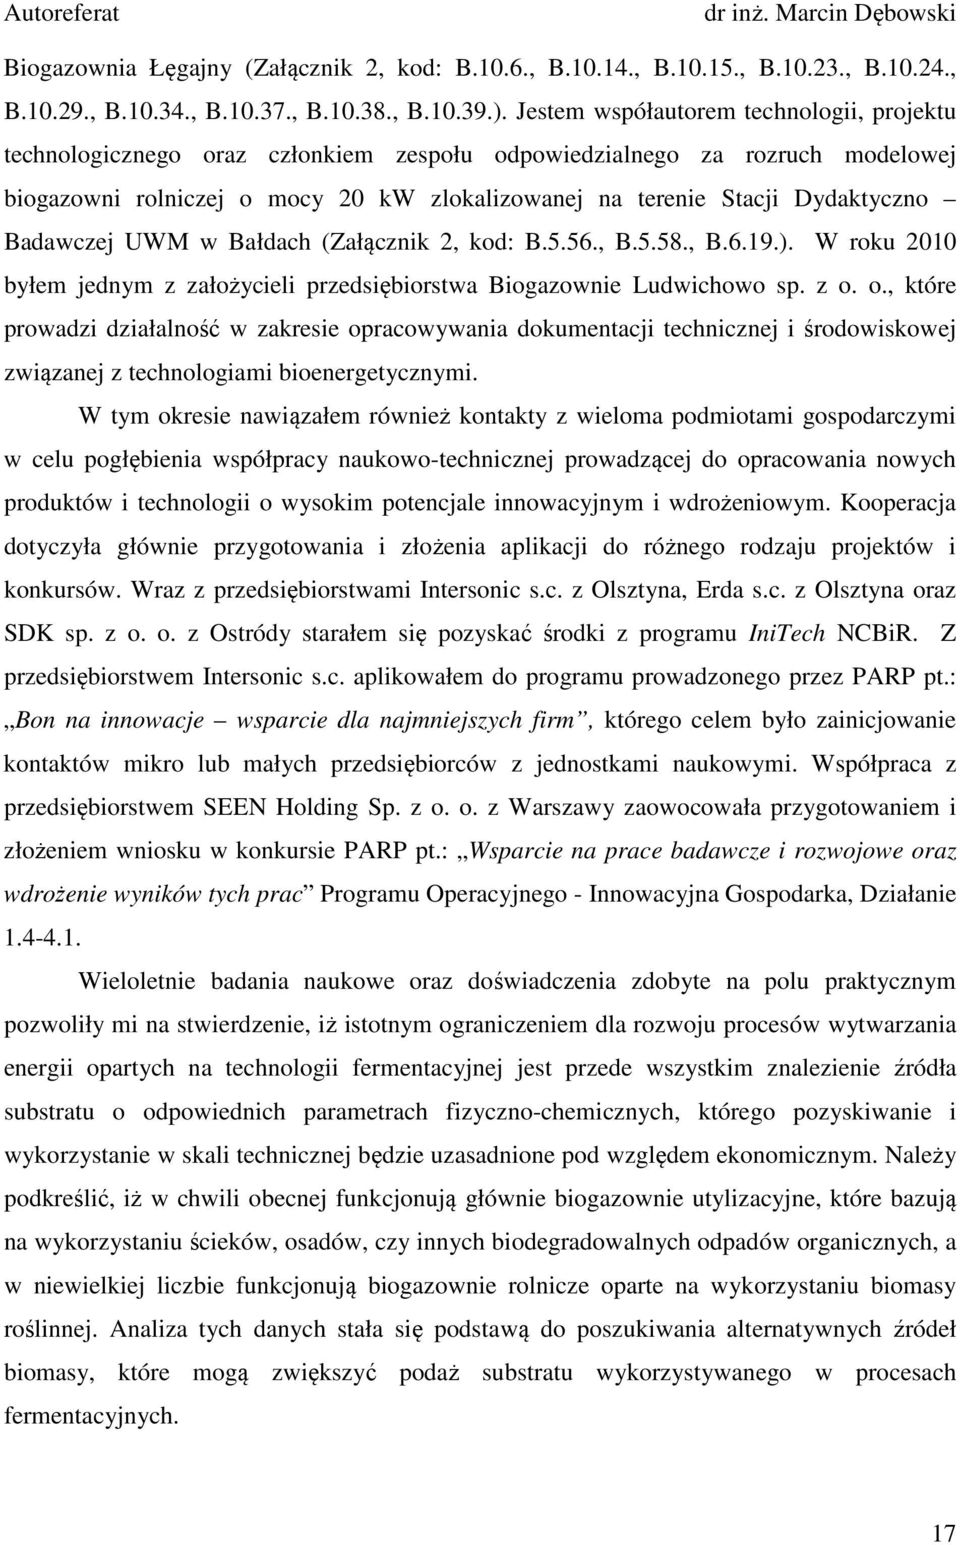 Badawczej UWM w Bałdach (Załącznik 2, kod: B.5.56., B.5.58., B.6.19.). W roku 2010 byłem jednym z założycieli przedsiębiorstwa Biogazownie Ludwichowo sp. z o.